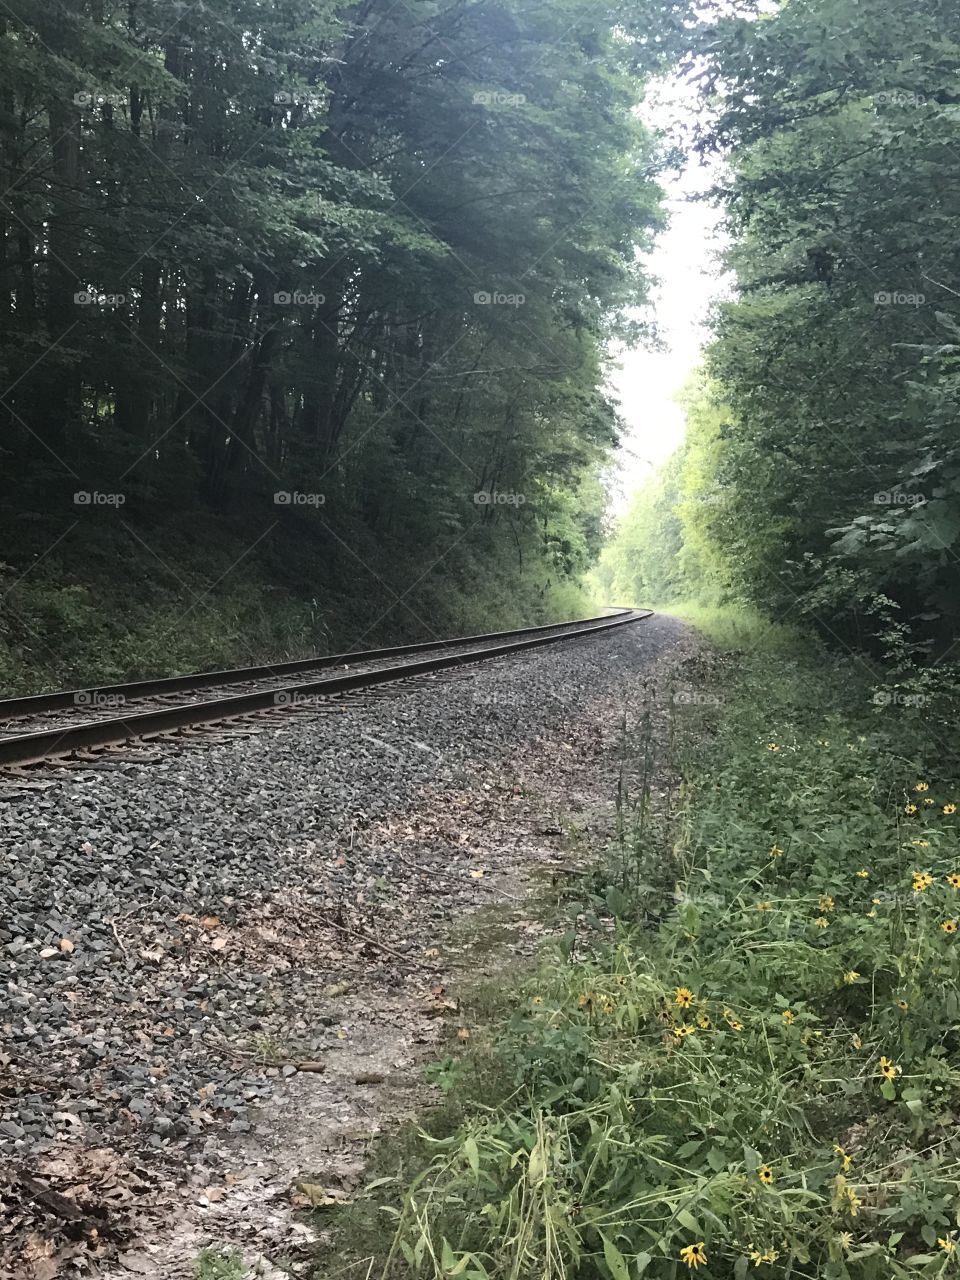 More railroad tracks😊